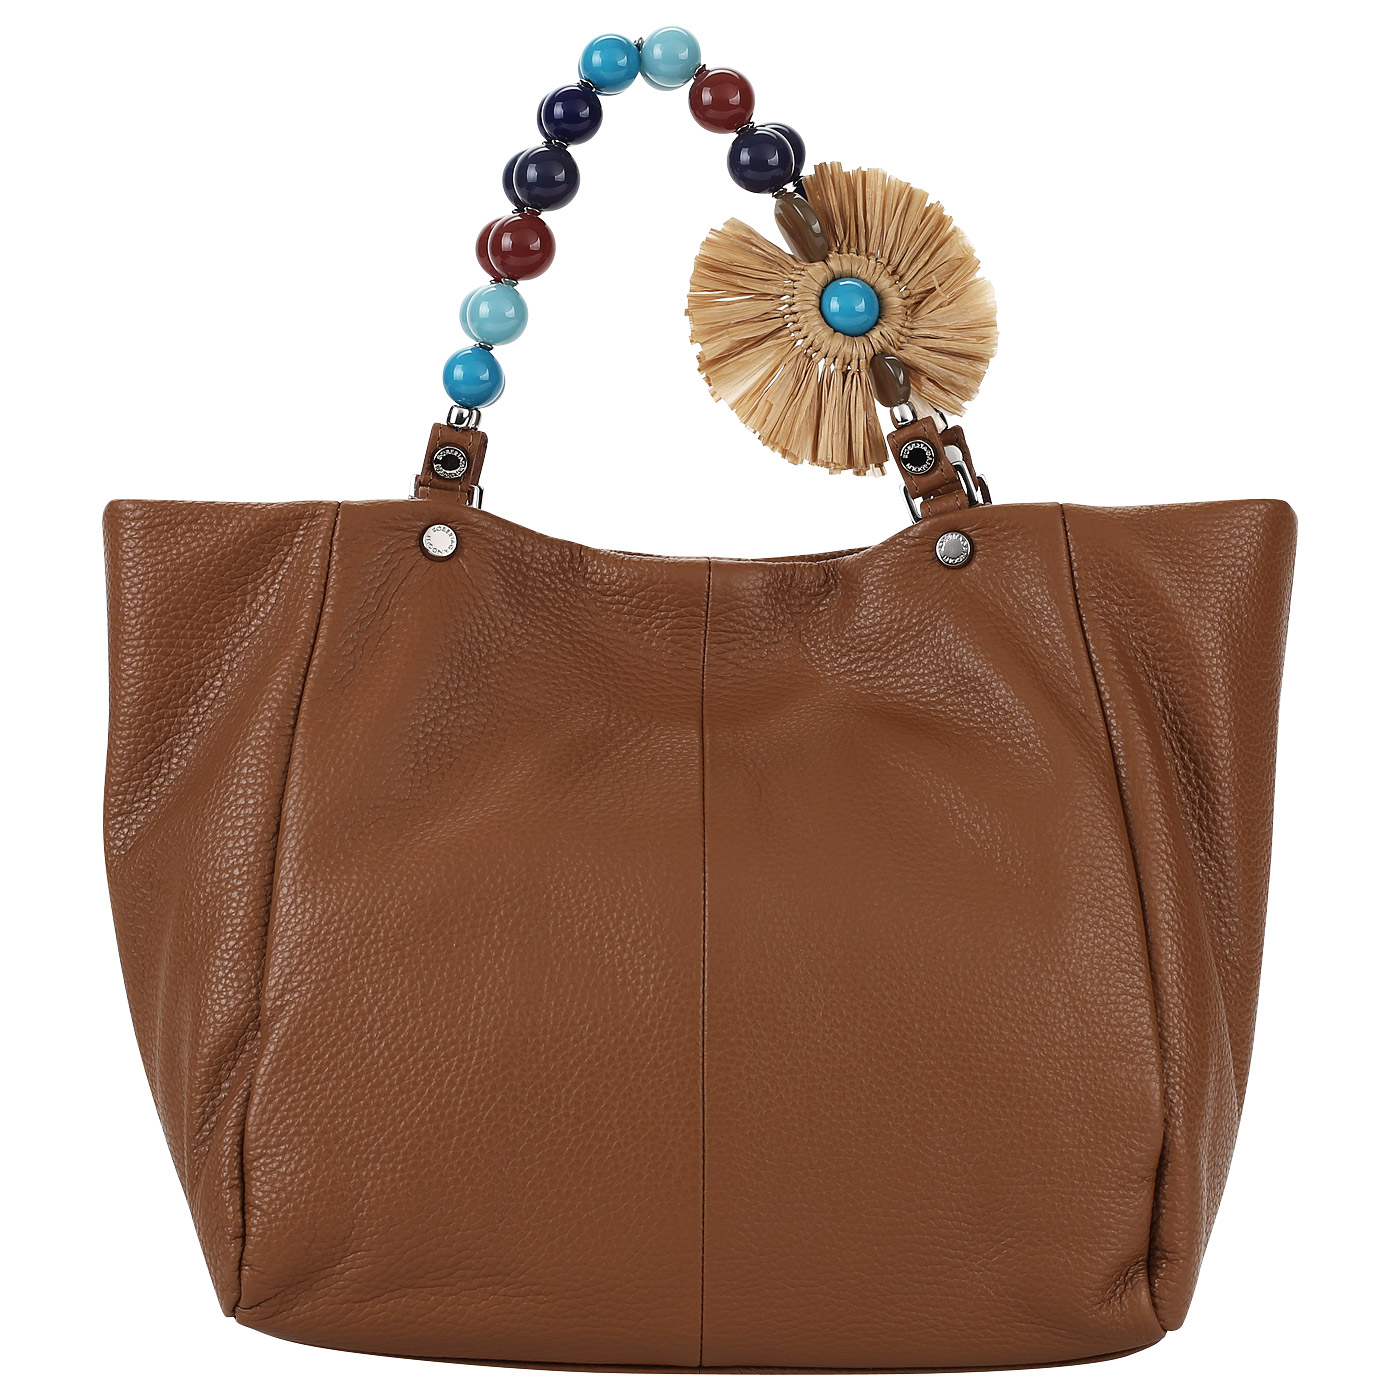 Roberta Gandolfi Женская вместительная сумка из натуральной кожи